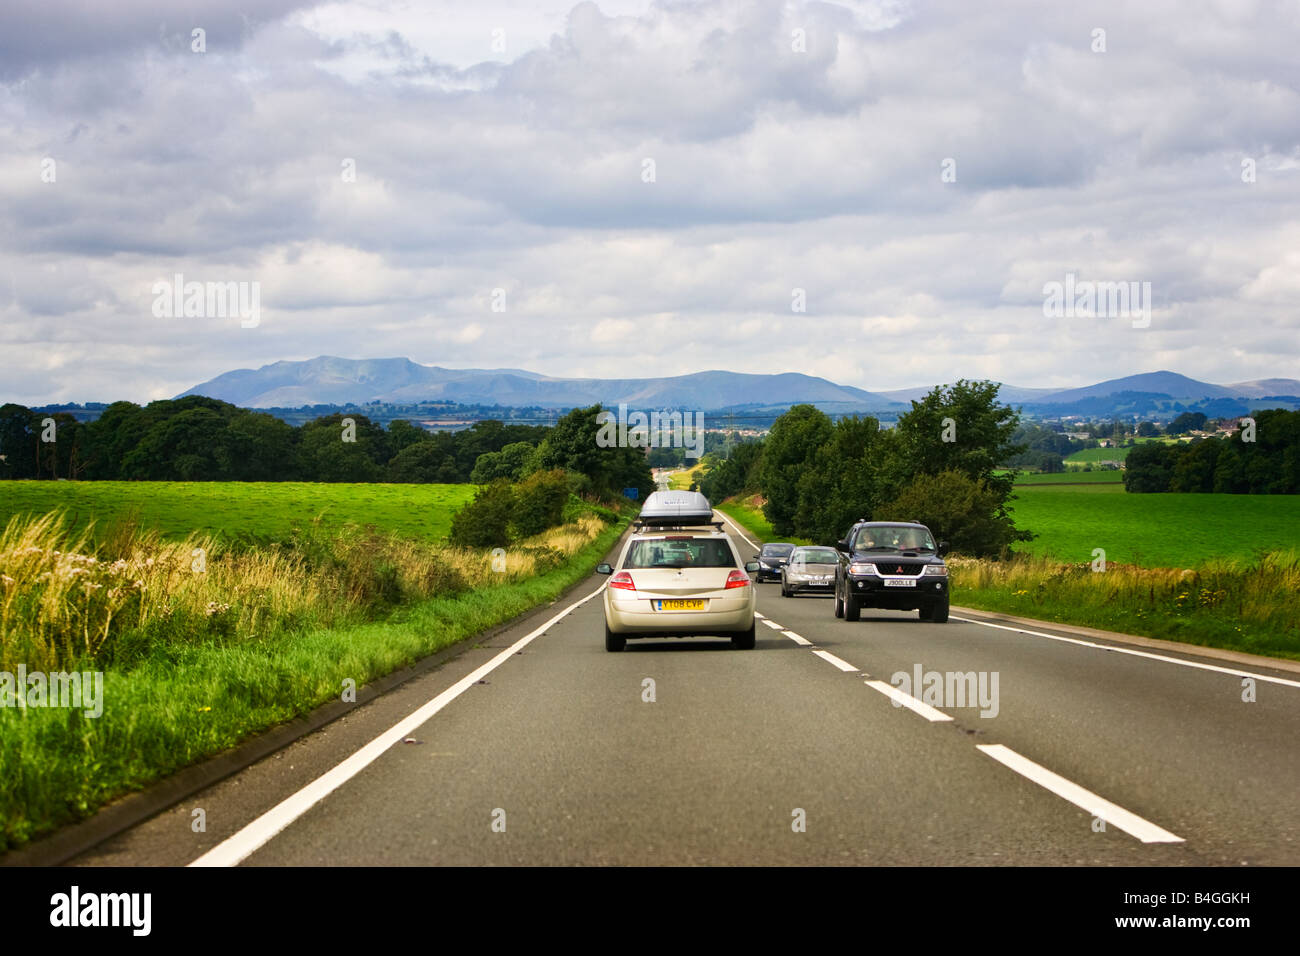 Véhicules sur une route A66 voyage à travers les Pennines en direction de Cumbria, Angleterre, Royaume-Uni Banque D'Images